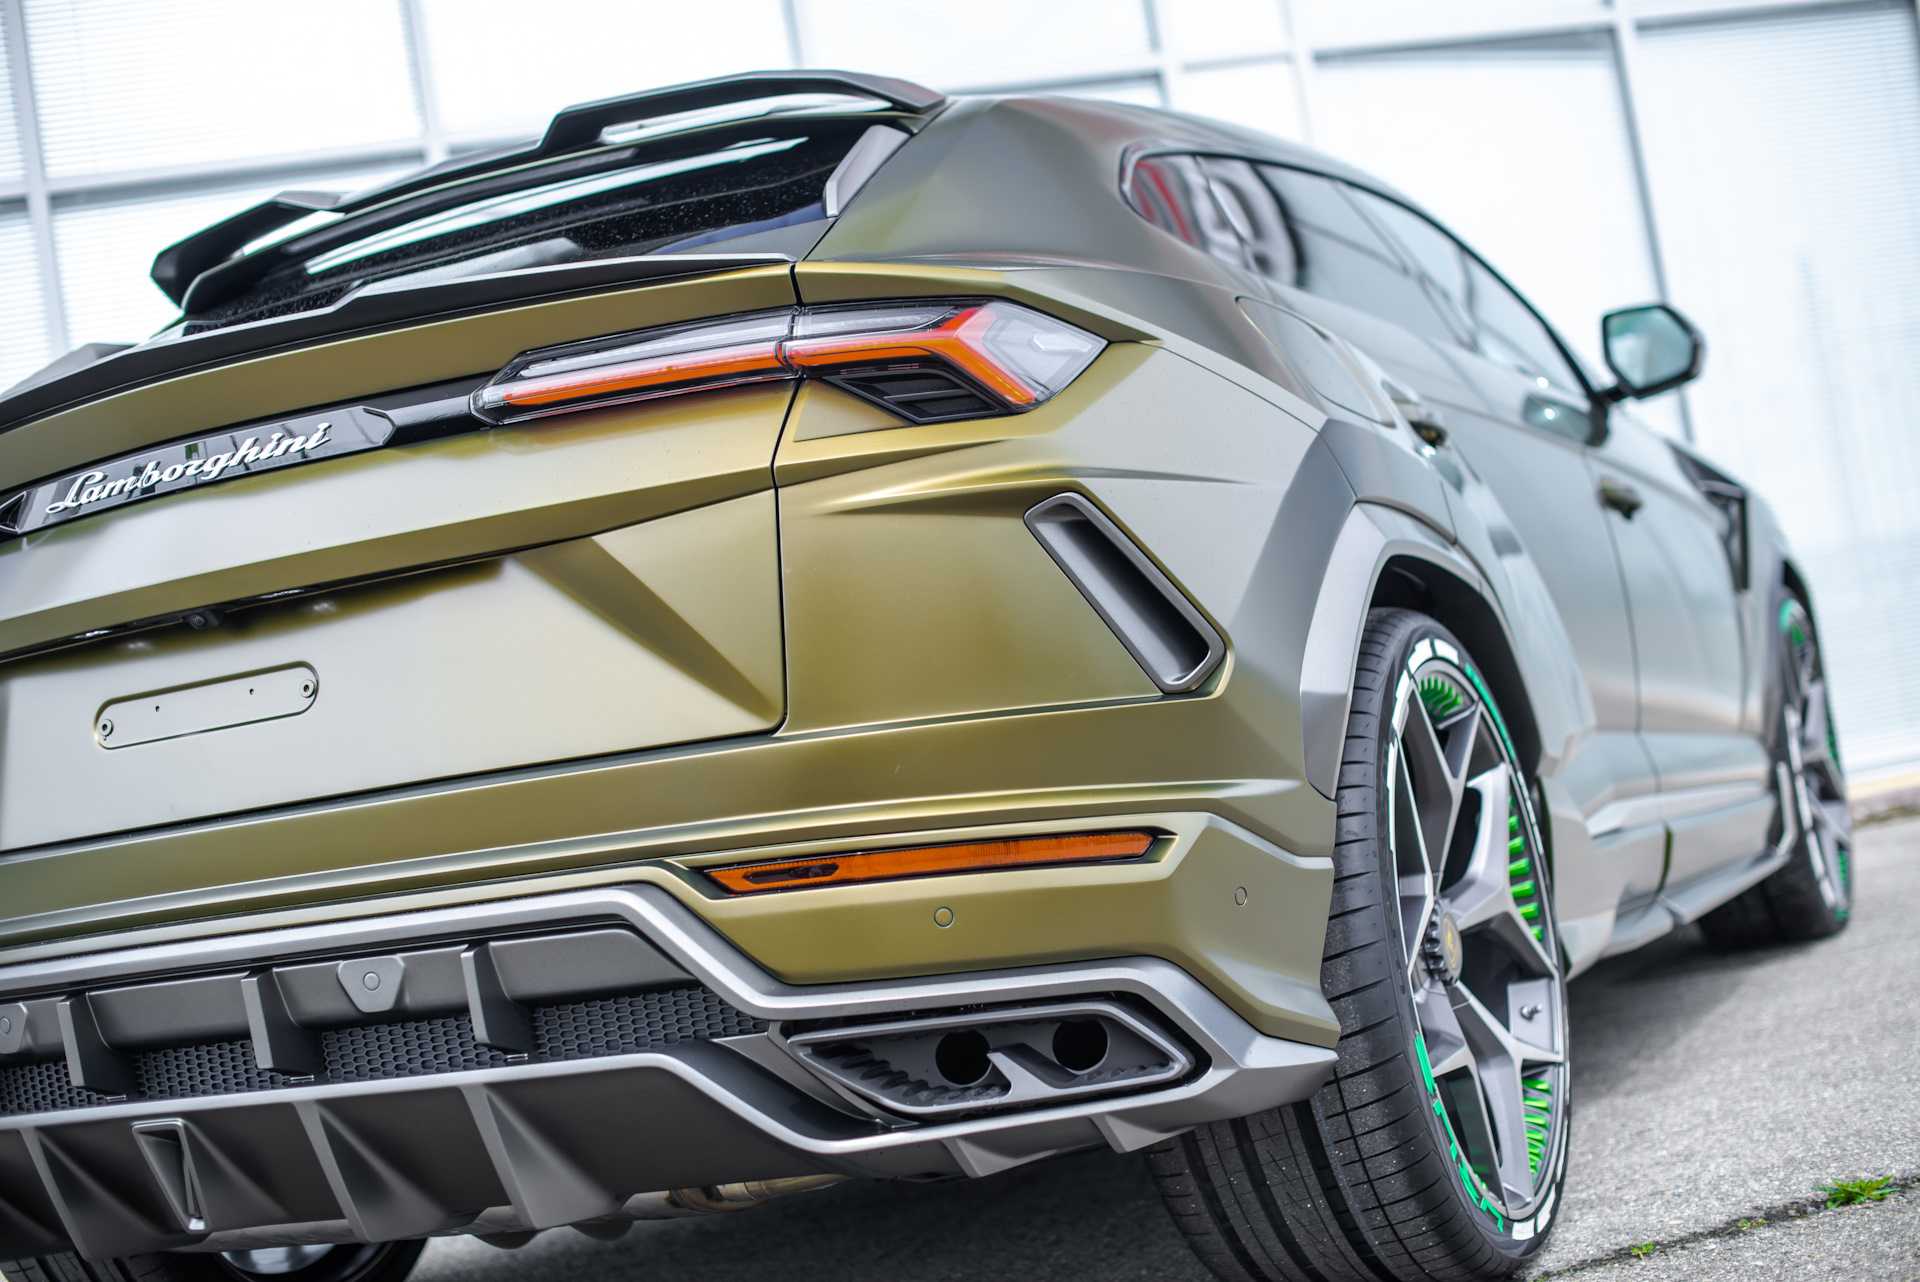 Lamborghini сняла новый рекламный ролик с урусом, в котором он ездит по россии